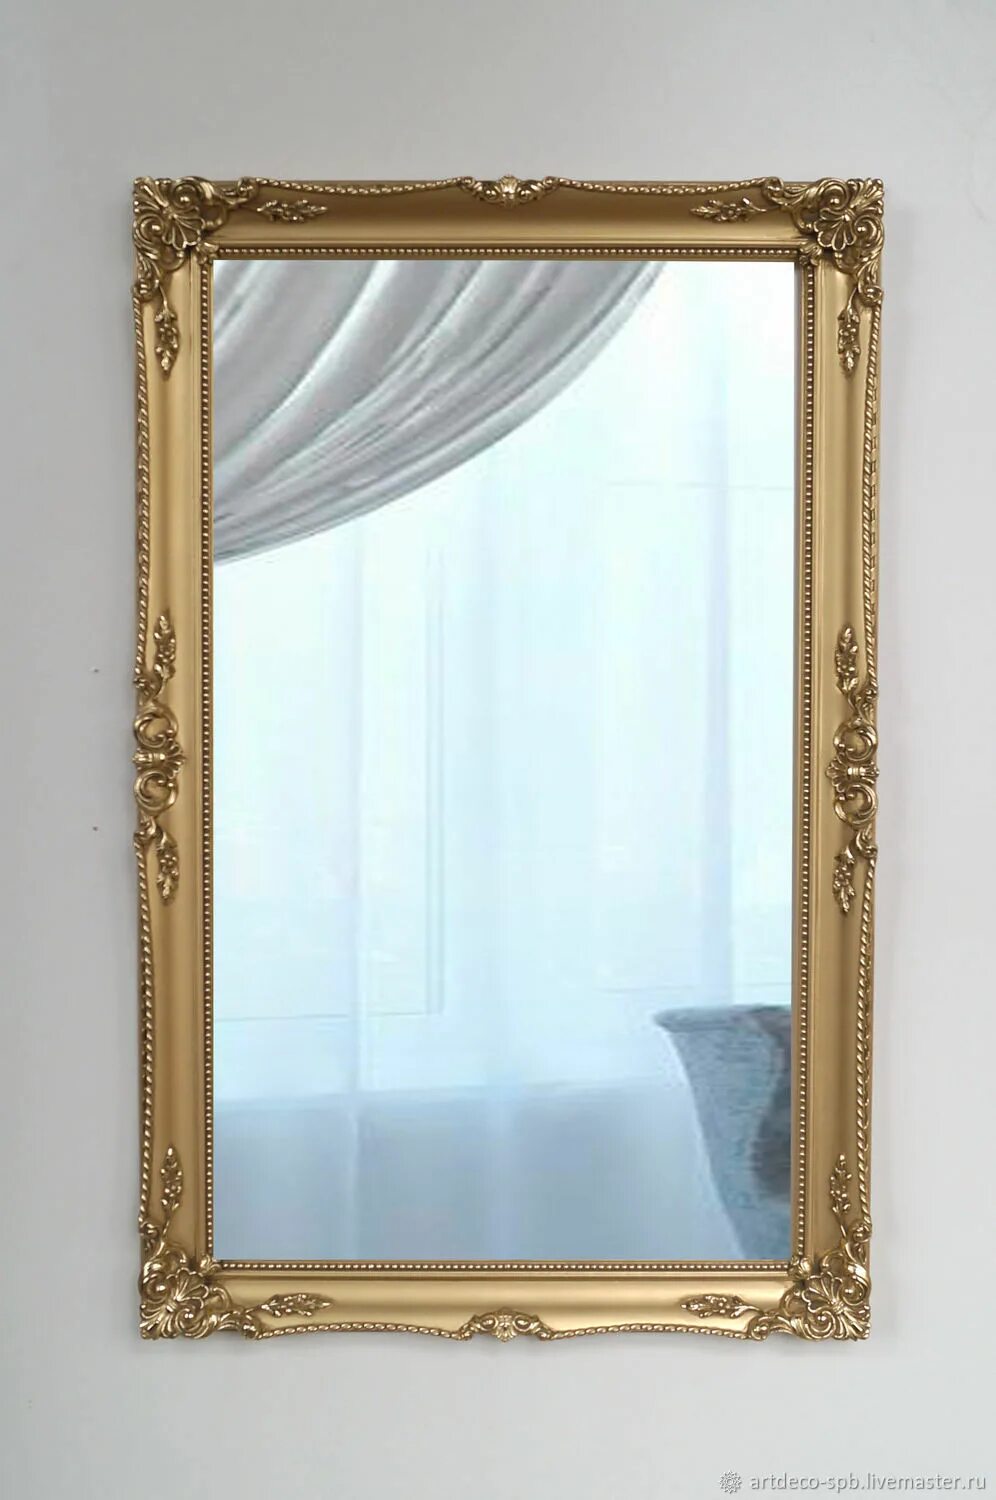 Зеркала в раме в спб. Мастерская АРТДЕКО Artdeco-spb. Багет для зеркала. Зеркало в багетной раме. Зеркало в канатной раме.